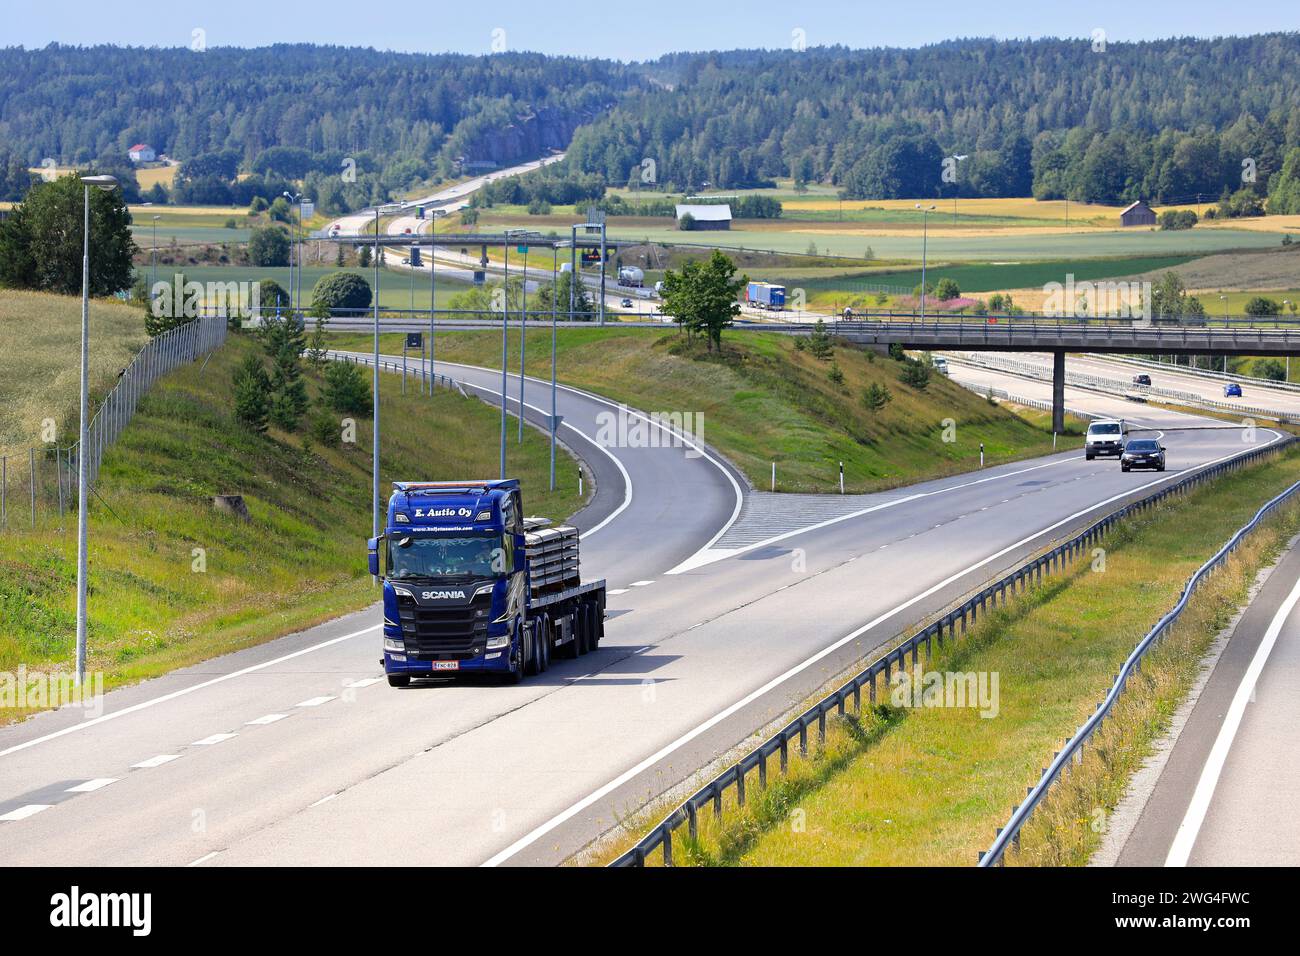 Salo, Finlande. 19 juillet 2019. Blue Next Generation Scania R580 Truck de E. Autio Oy transporte des dalles de béton sur remorque à plateau le long de l'autoroute E18. Banque D'Images